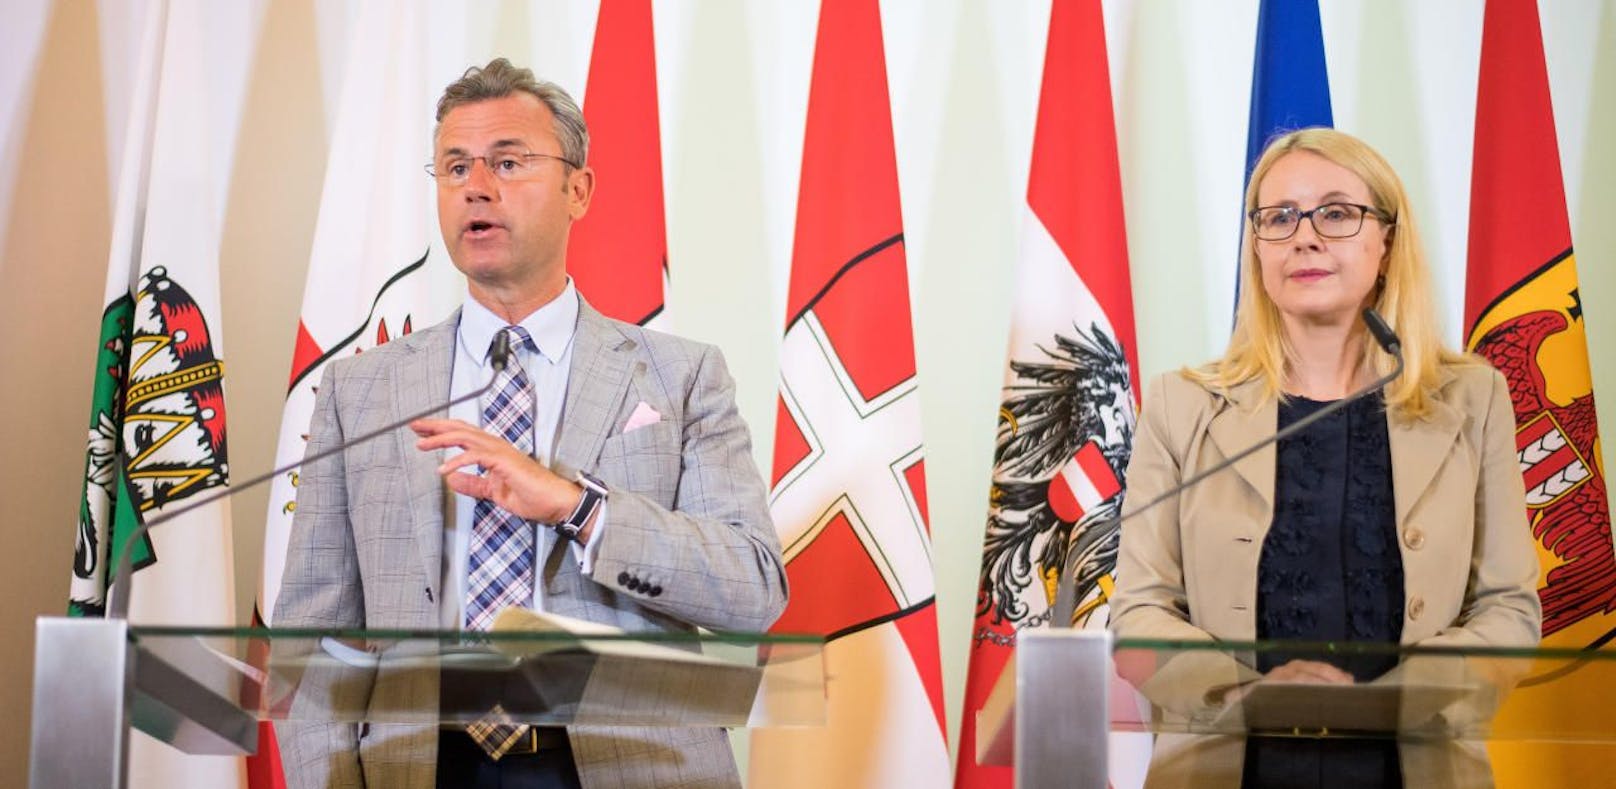 Ehrgeizige Ziele: Infrastrukturminister Norbert Hofer (FP) und Wirtschaftsministerin Margarete Schramböck (VP) wollen Österreich zum Vorreiter beim Thema Digitalisierung machen.